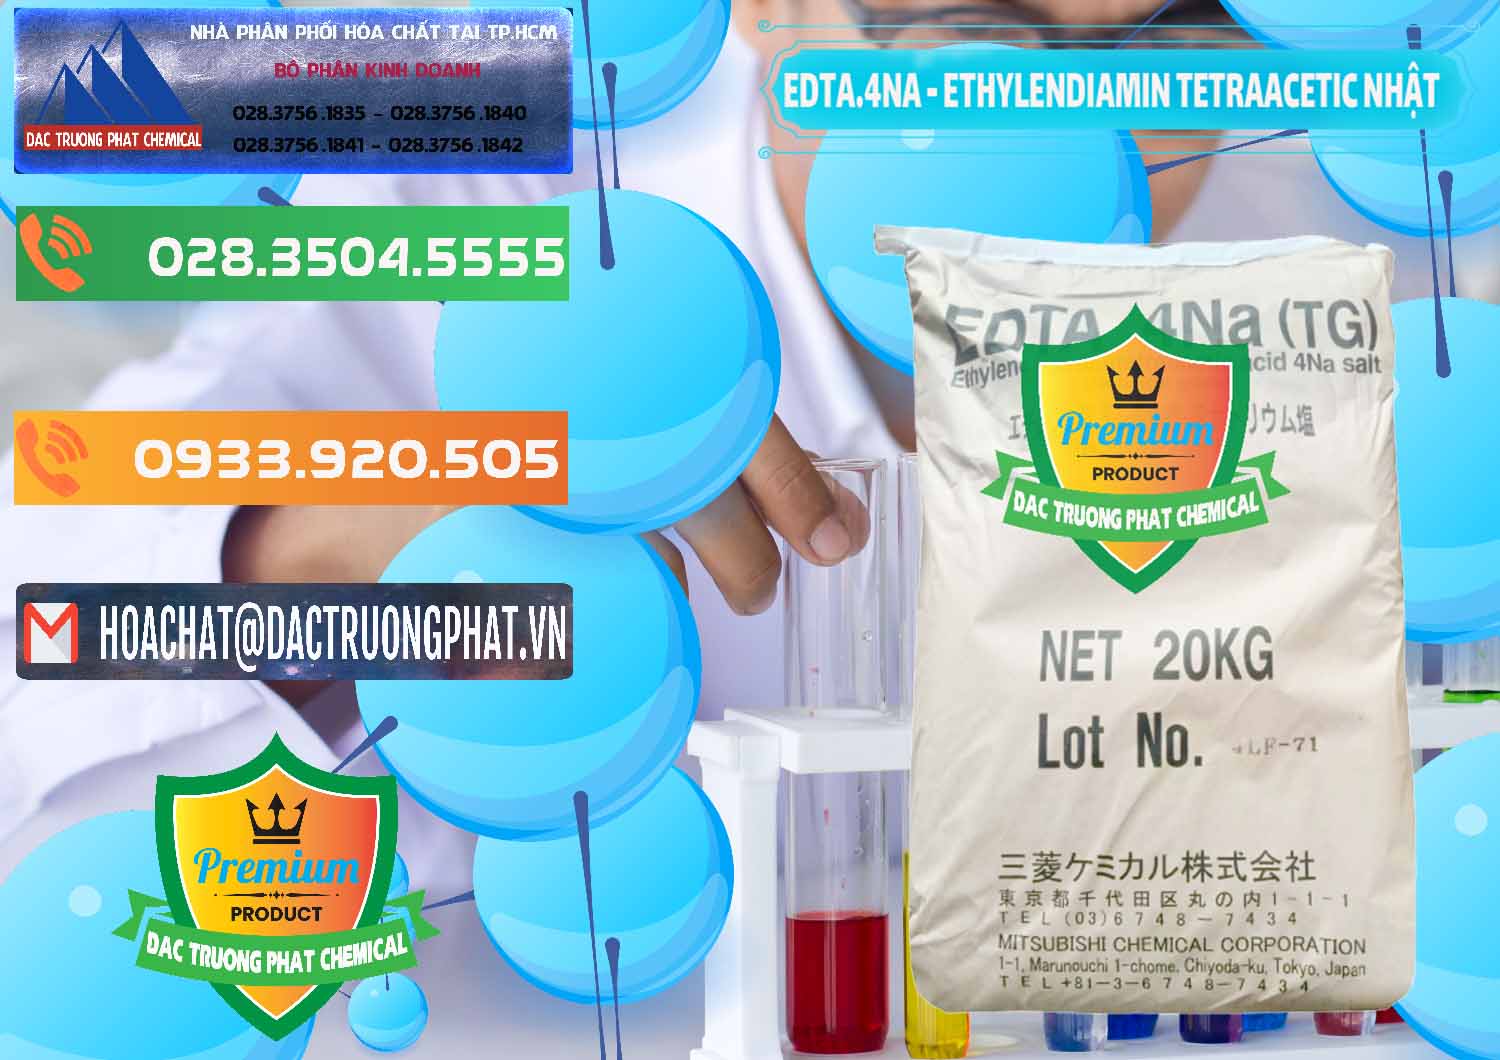 Công ty chuyên kinh doanh ( bán ) EDTA 4Na - Ethylendiamin Tetraacetic Nhật Bản Japan - 0482 - Công ty chuyên bán - phân phối hóa chất tại TP.HCM - hoachatxulynuoc.com.vn